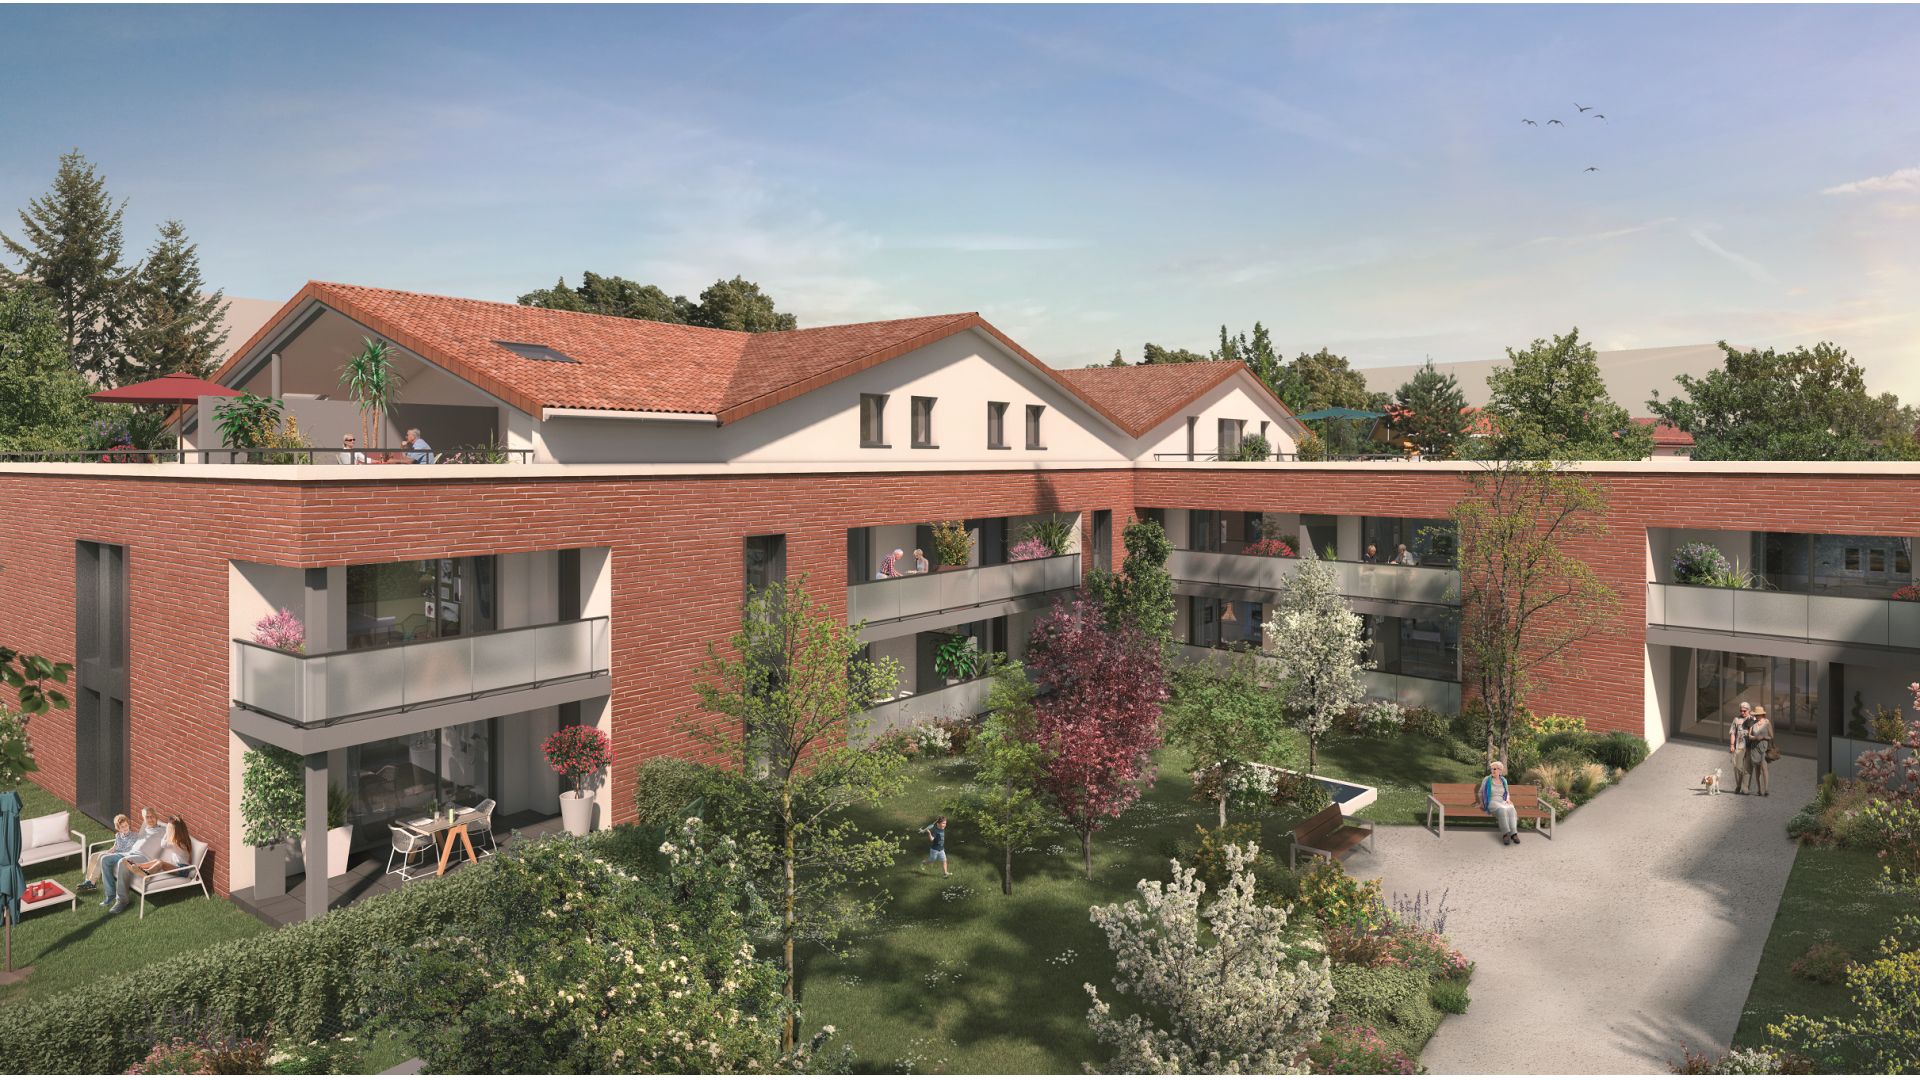 Greencity immobilier - achat appartements neufs du T2 au T4 - Résidence Séniors - VILLAGES D’OR COEUR BALMA - 31130 Balma